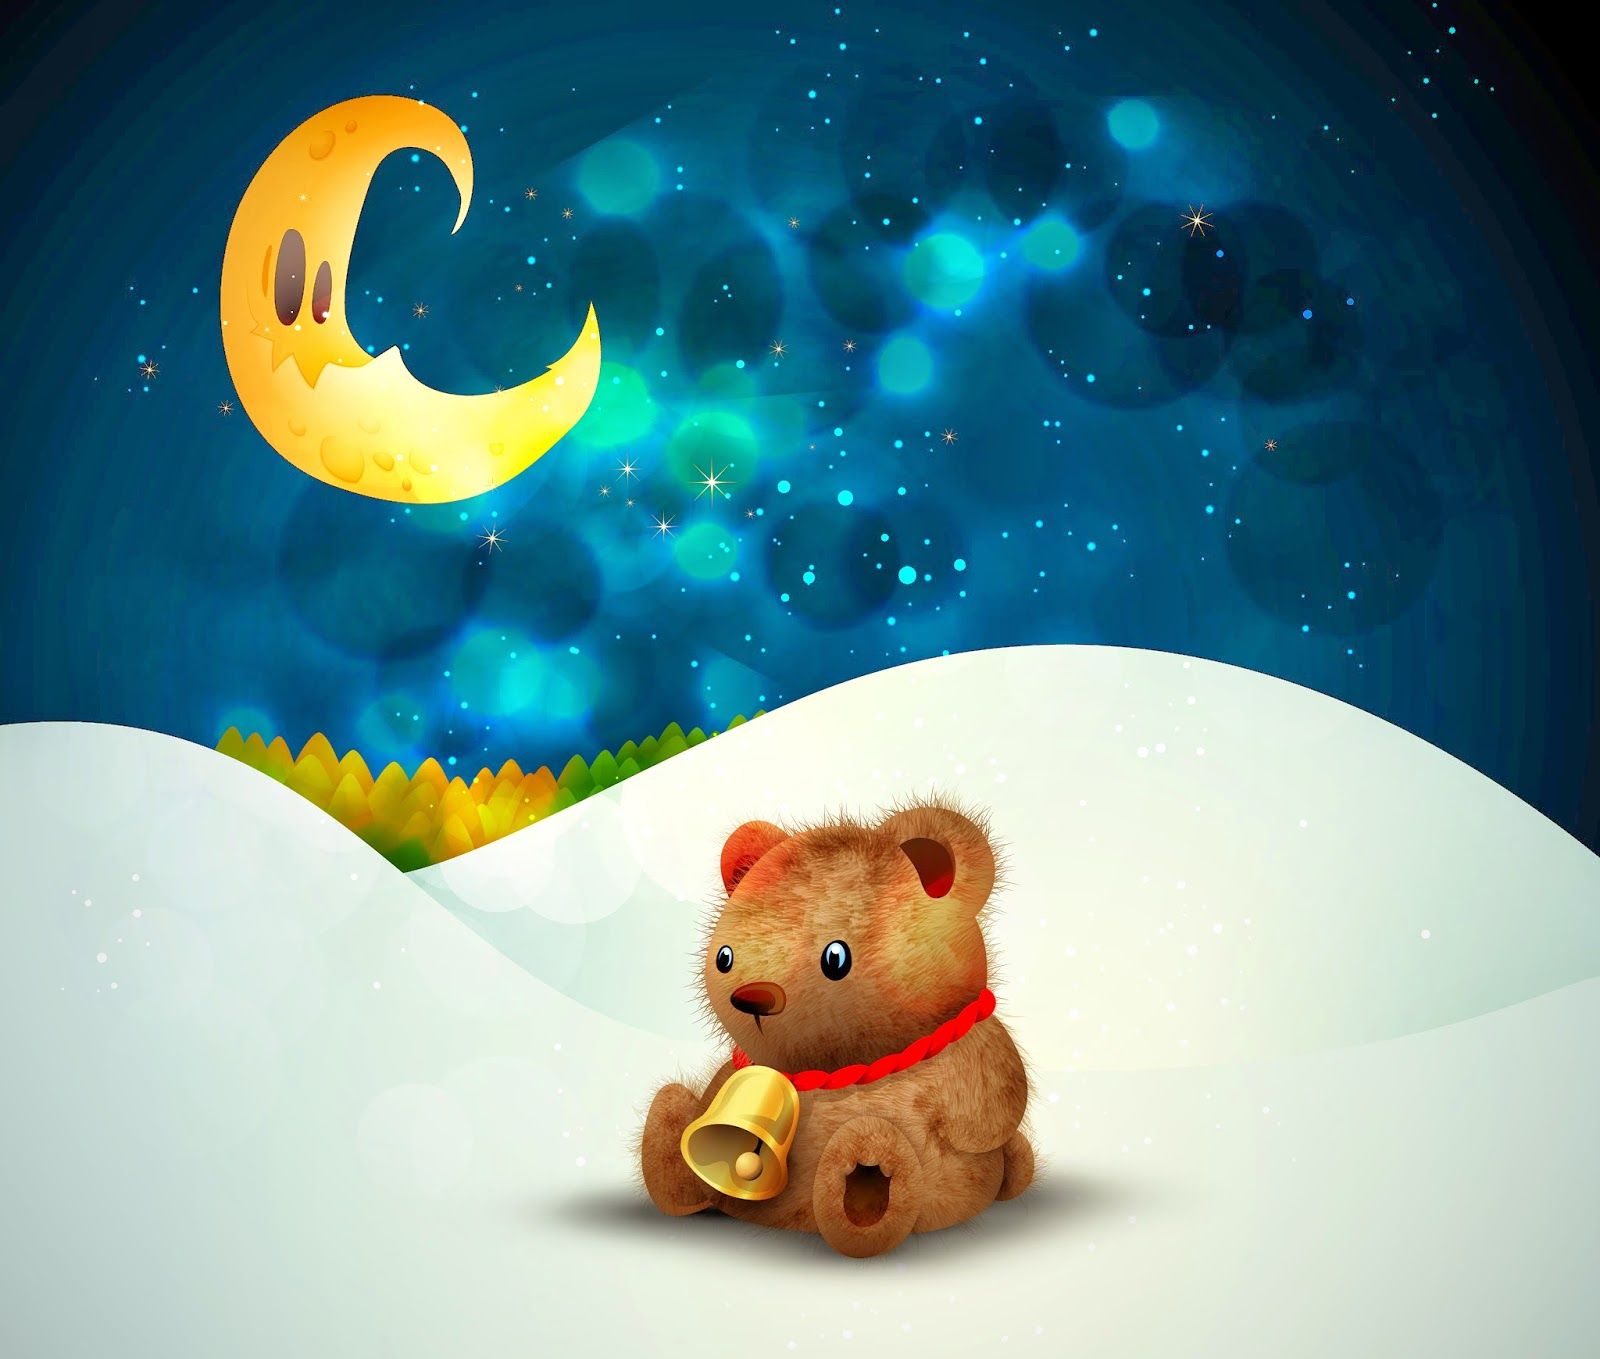 Cute Teddy Bear Wallpapers para niños pequeños y niños